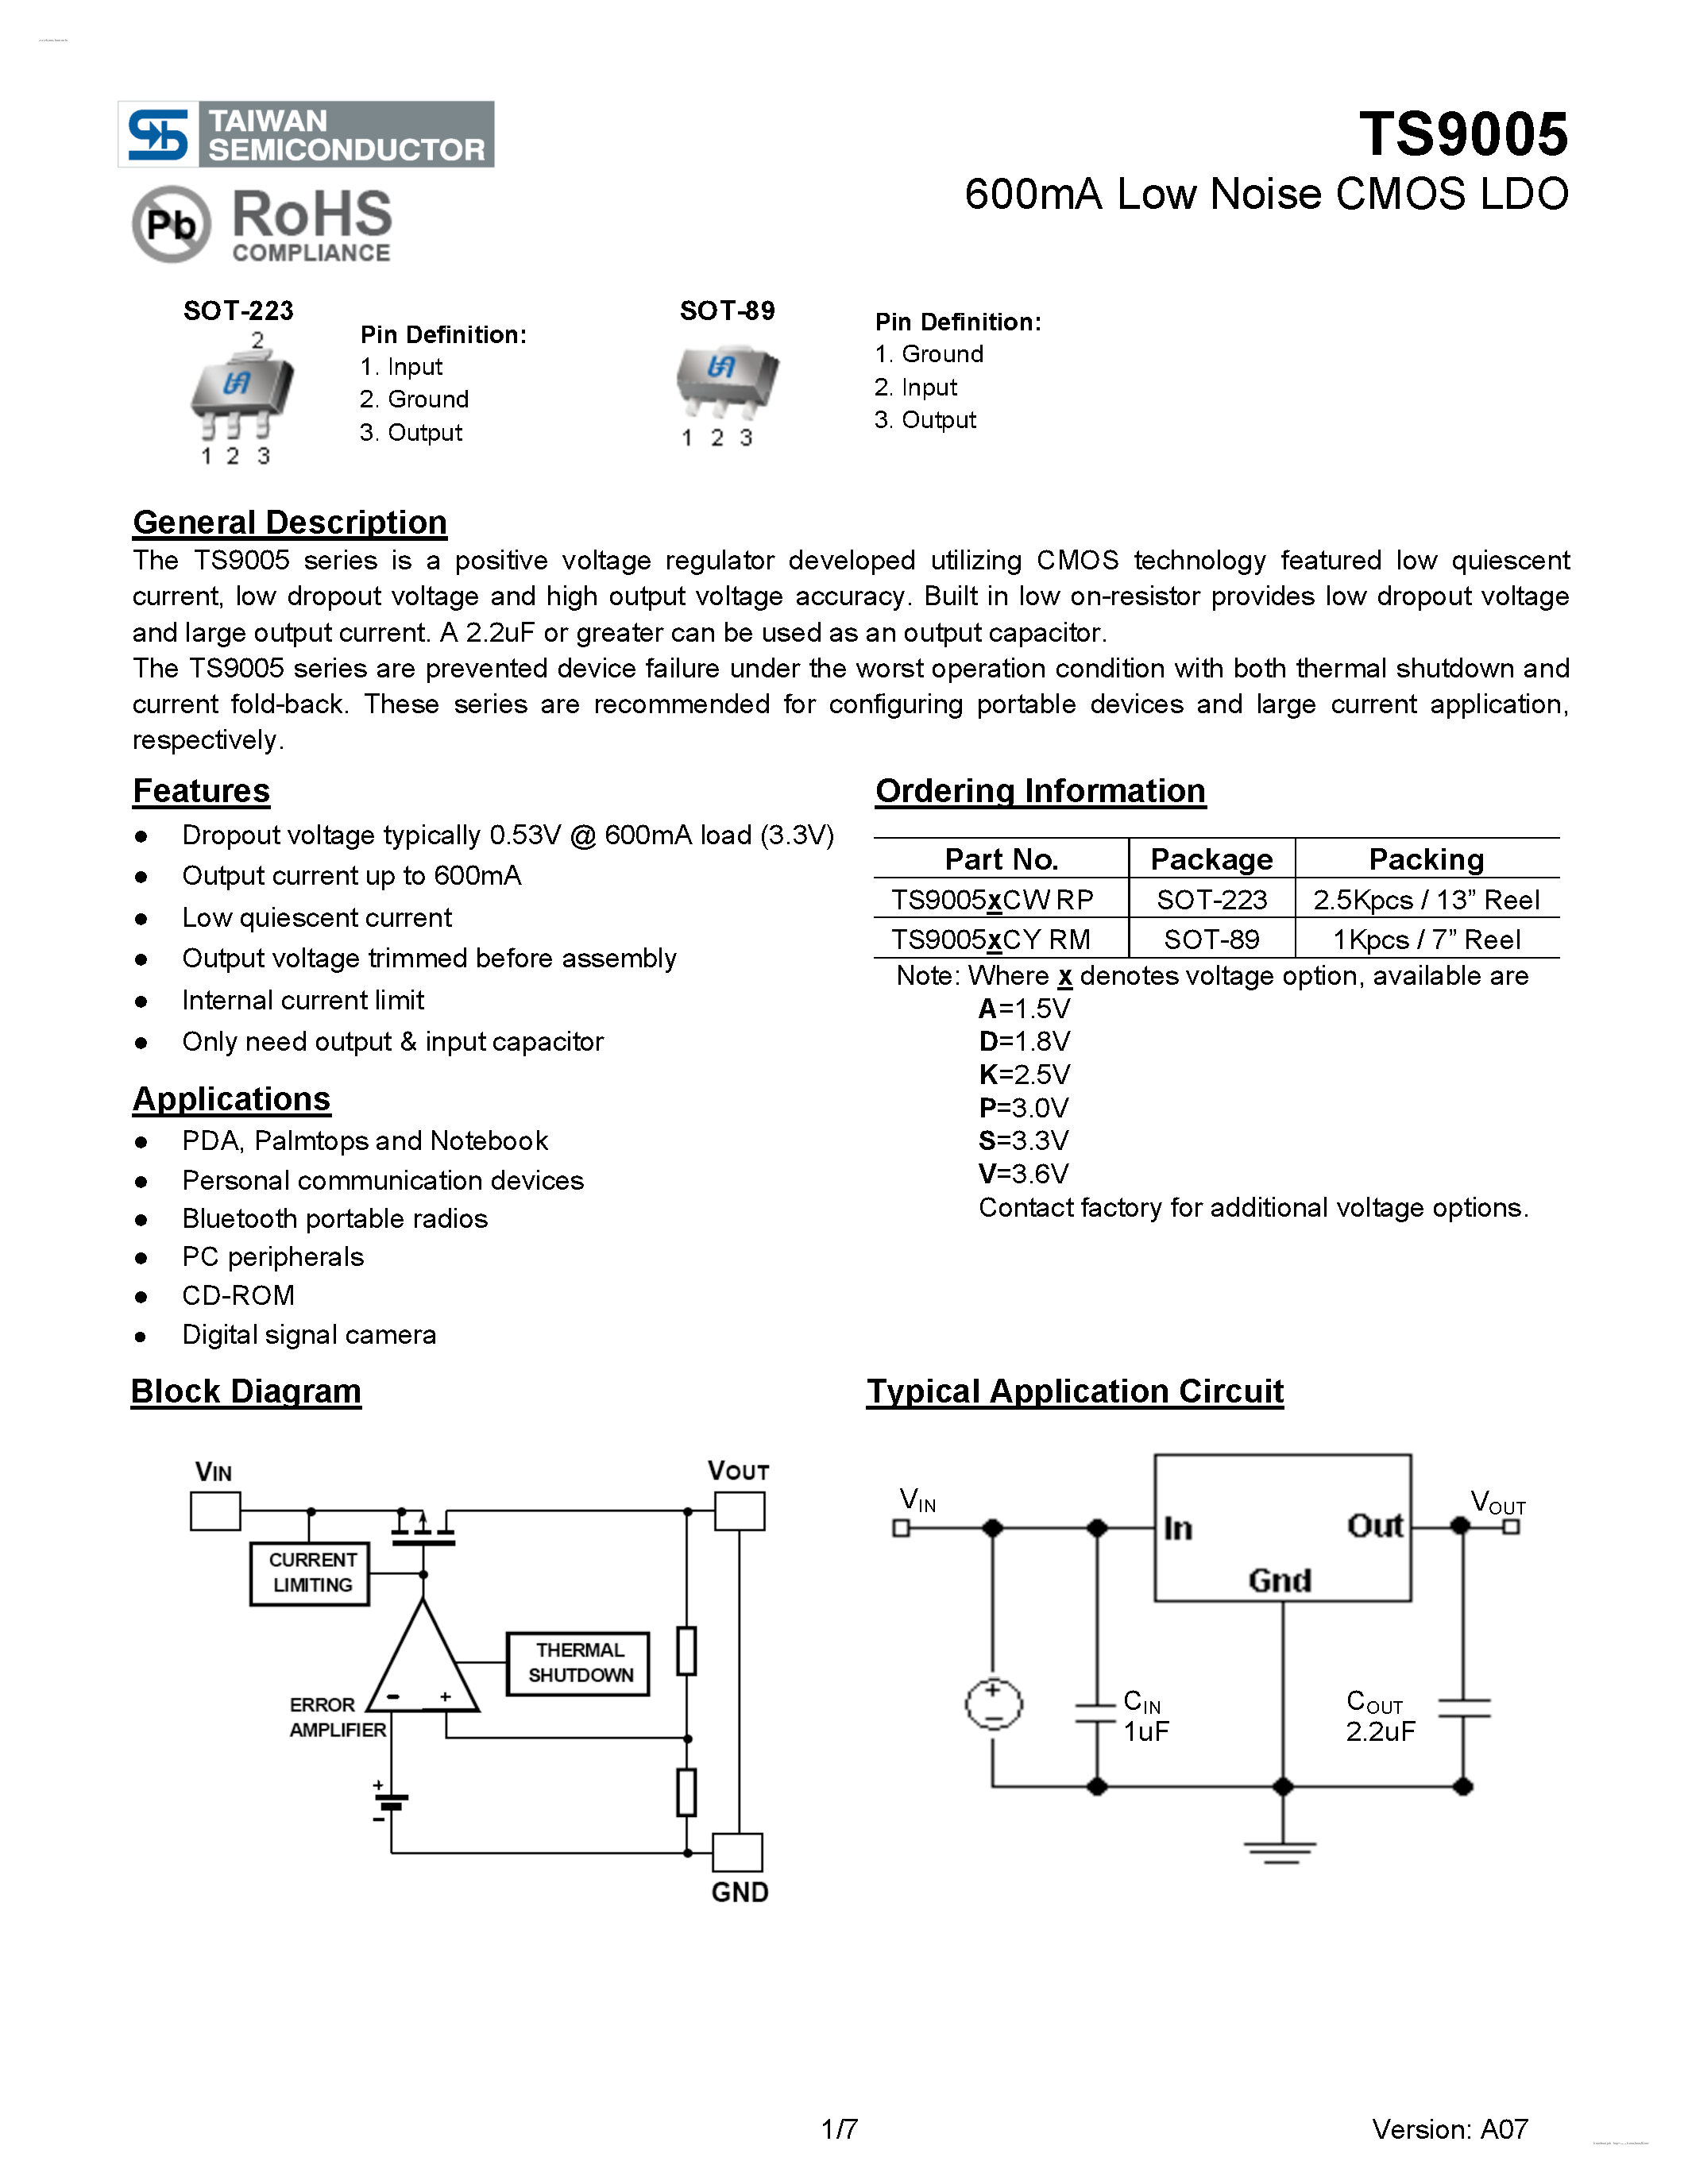 Даташит TS9005 - 600mA Low Noise CMOS LDO страница 1